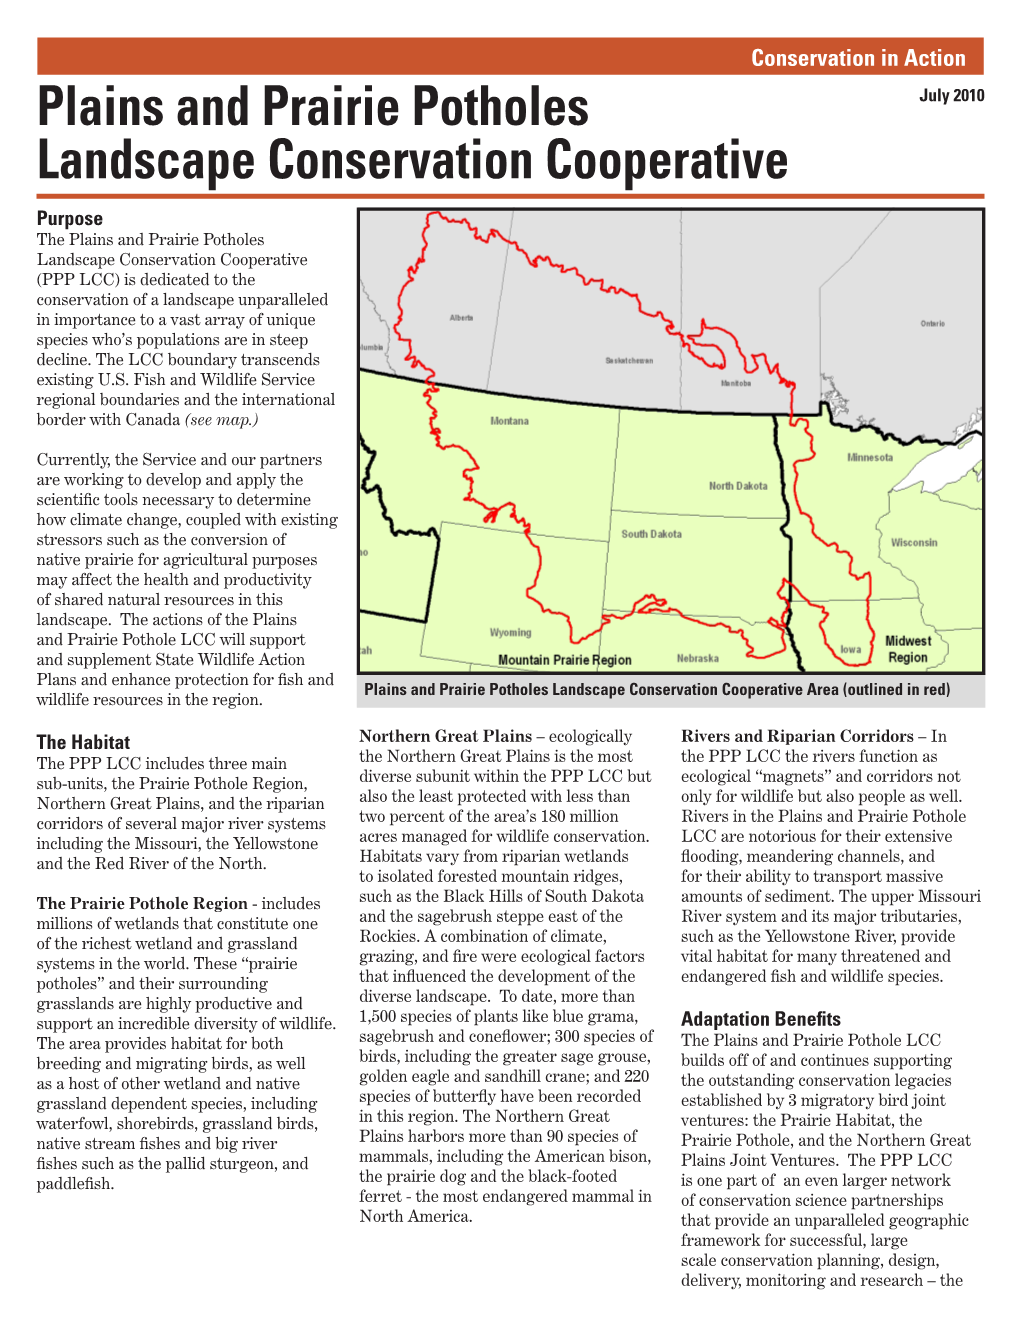 Plains and Prairie Potholes Landscape Conservation Cooperative